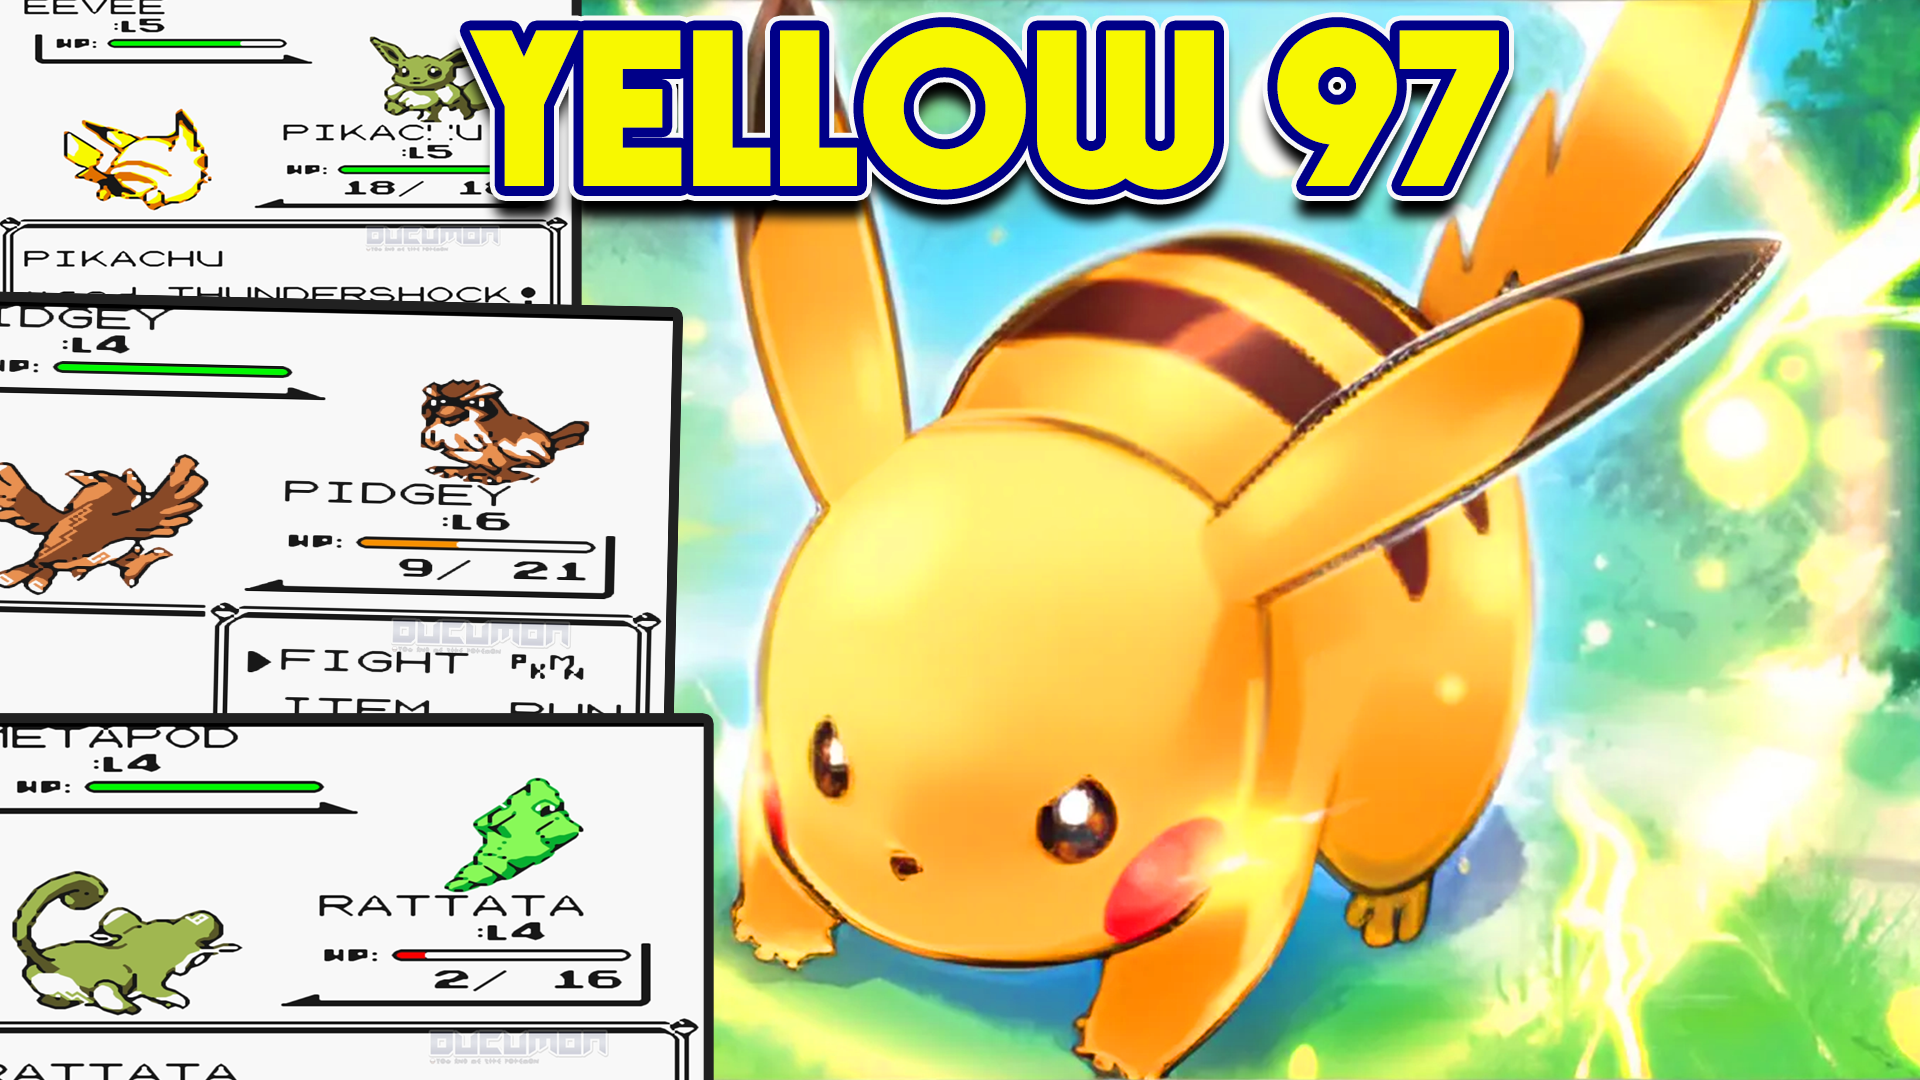 Pokemon Yellow 97 - Взлом GBC ROM с оригинальными задними спрайтами Space World 97